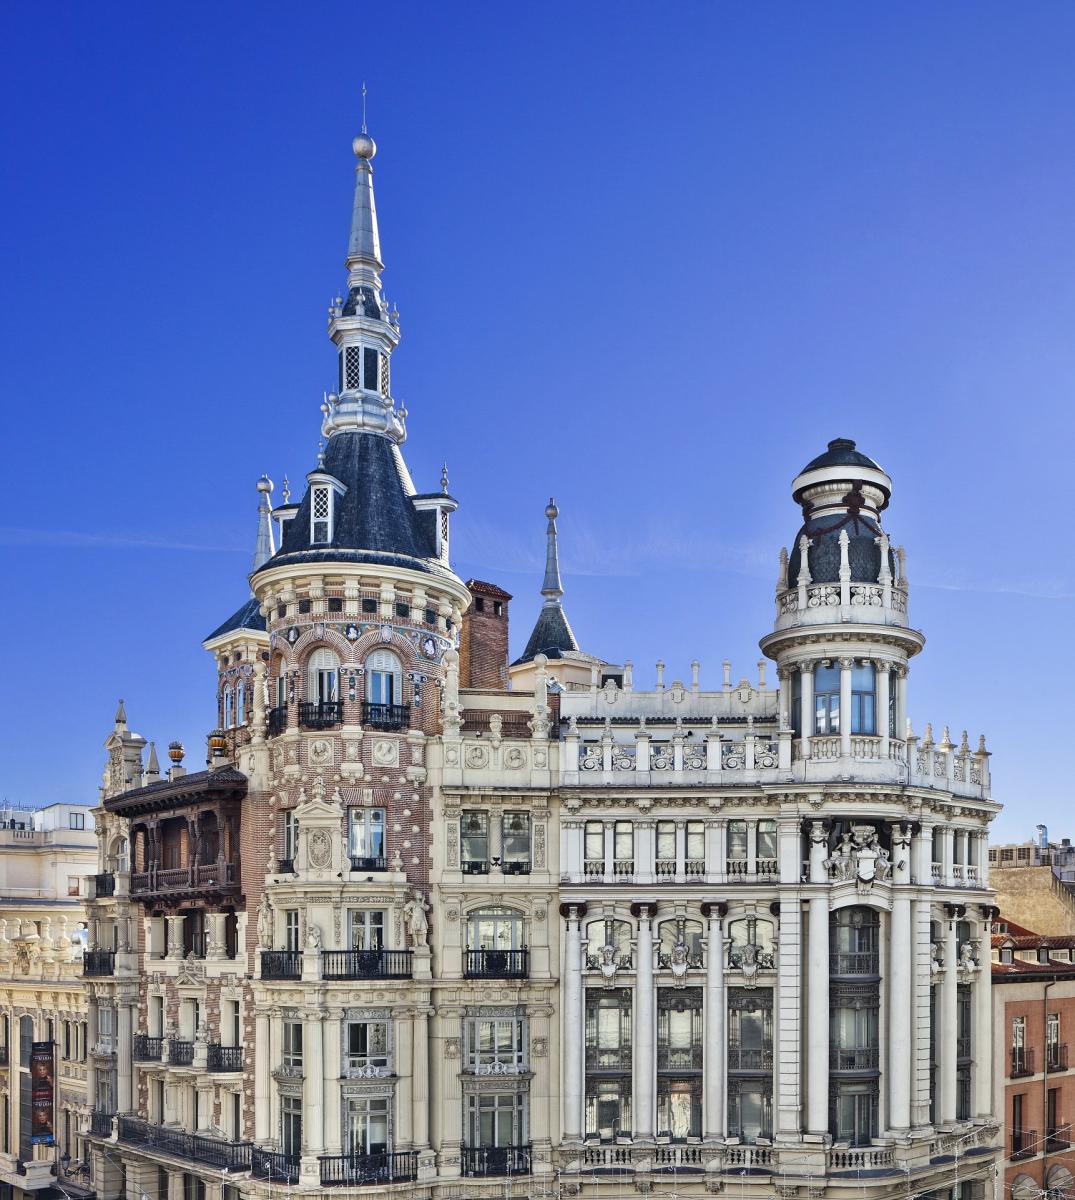 Nuevo UMusic Hotel Teatro Reina Victoria en Madrid